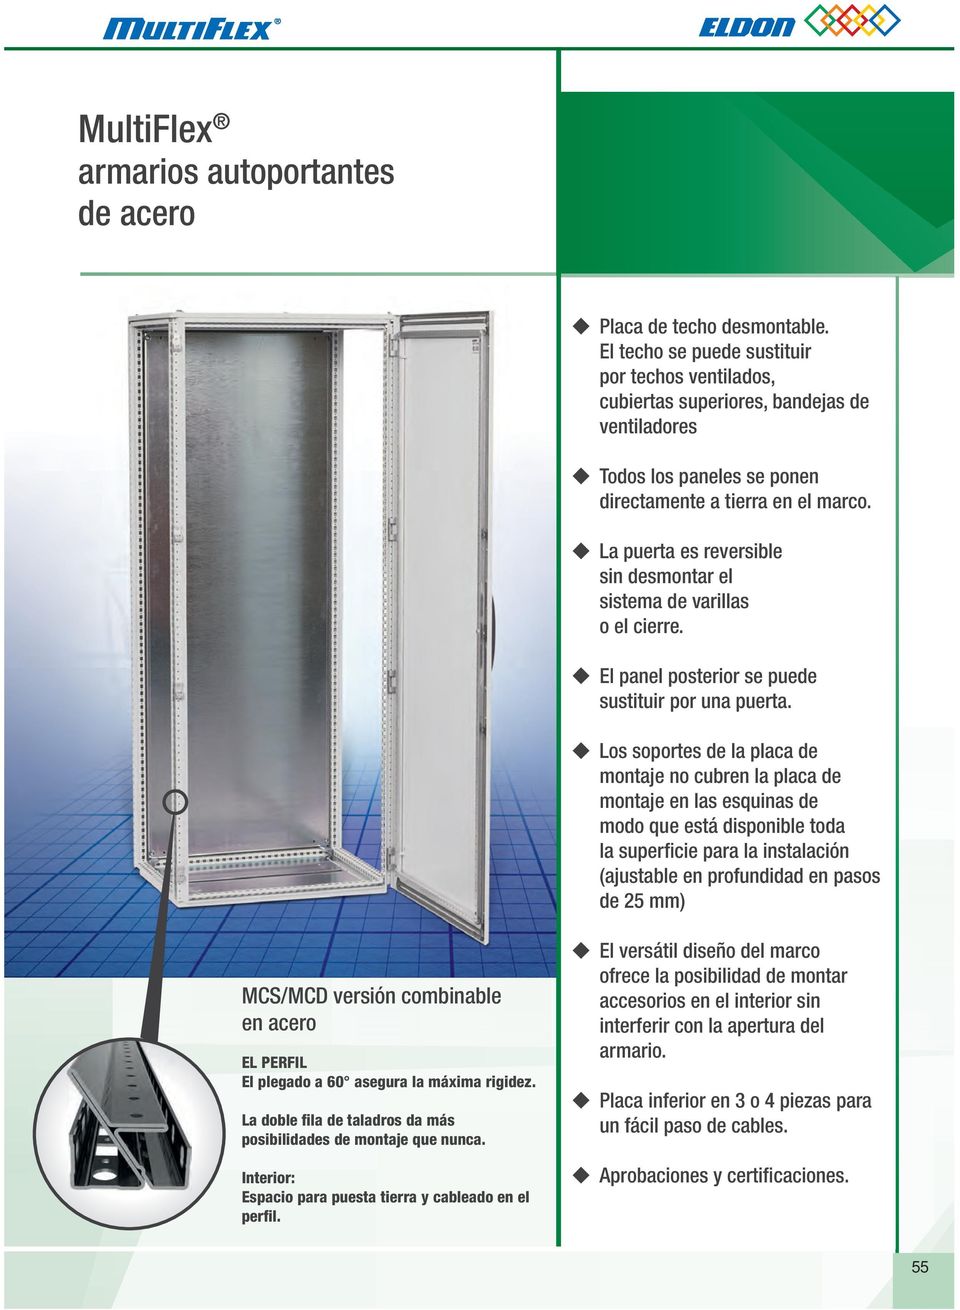 La puerta es reversible sin desmontar el sistema de varillas o el cierre. El panel posterior se puede sustituir por una puerta.